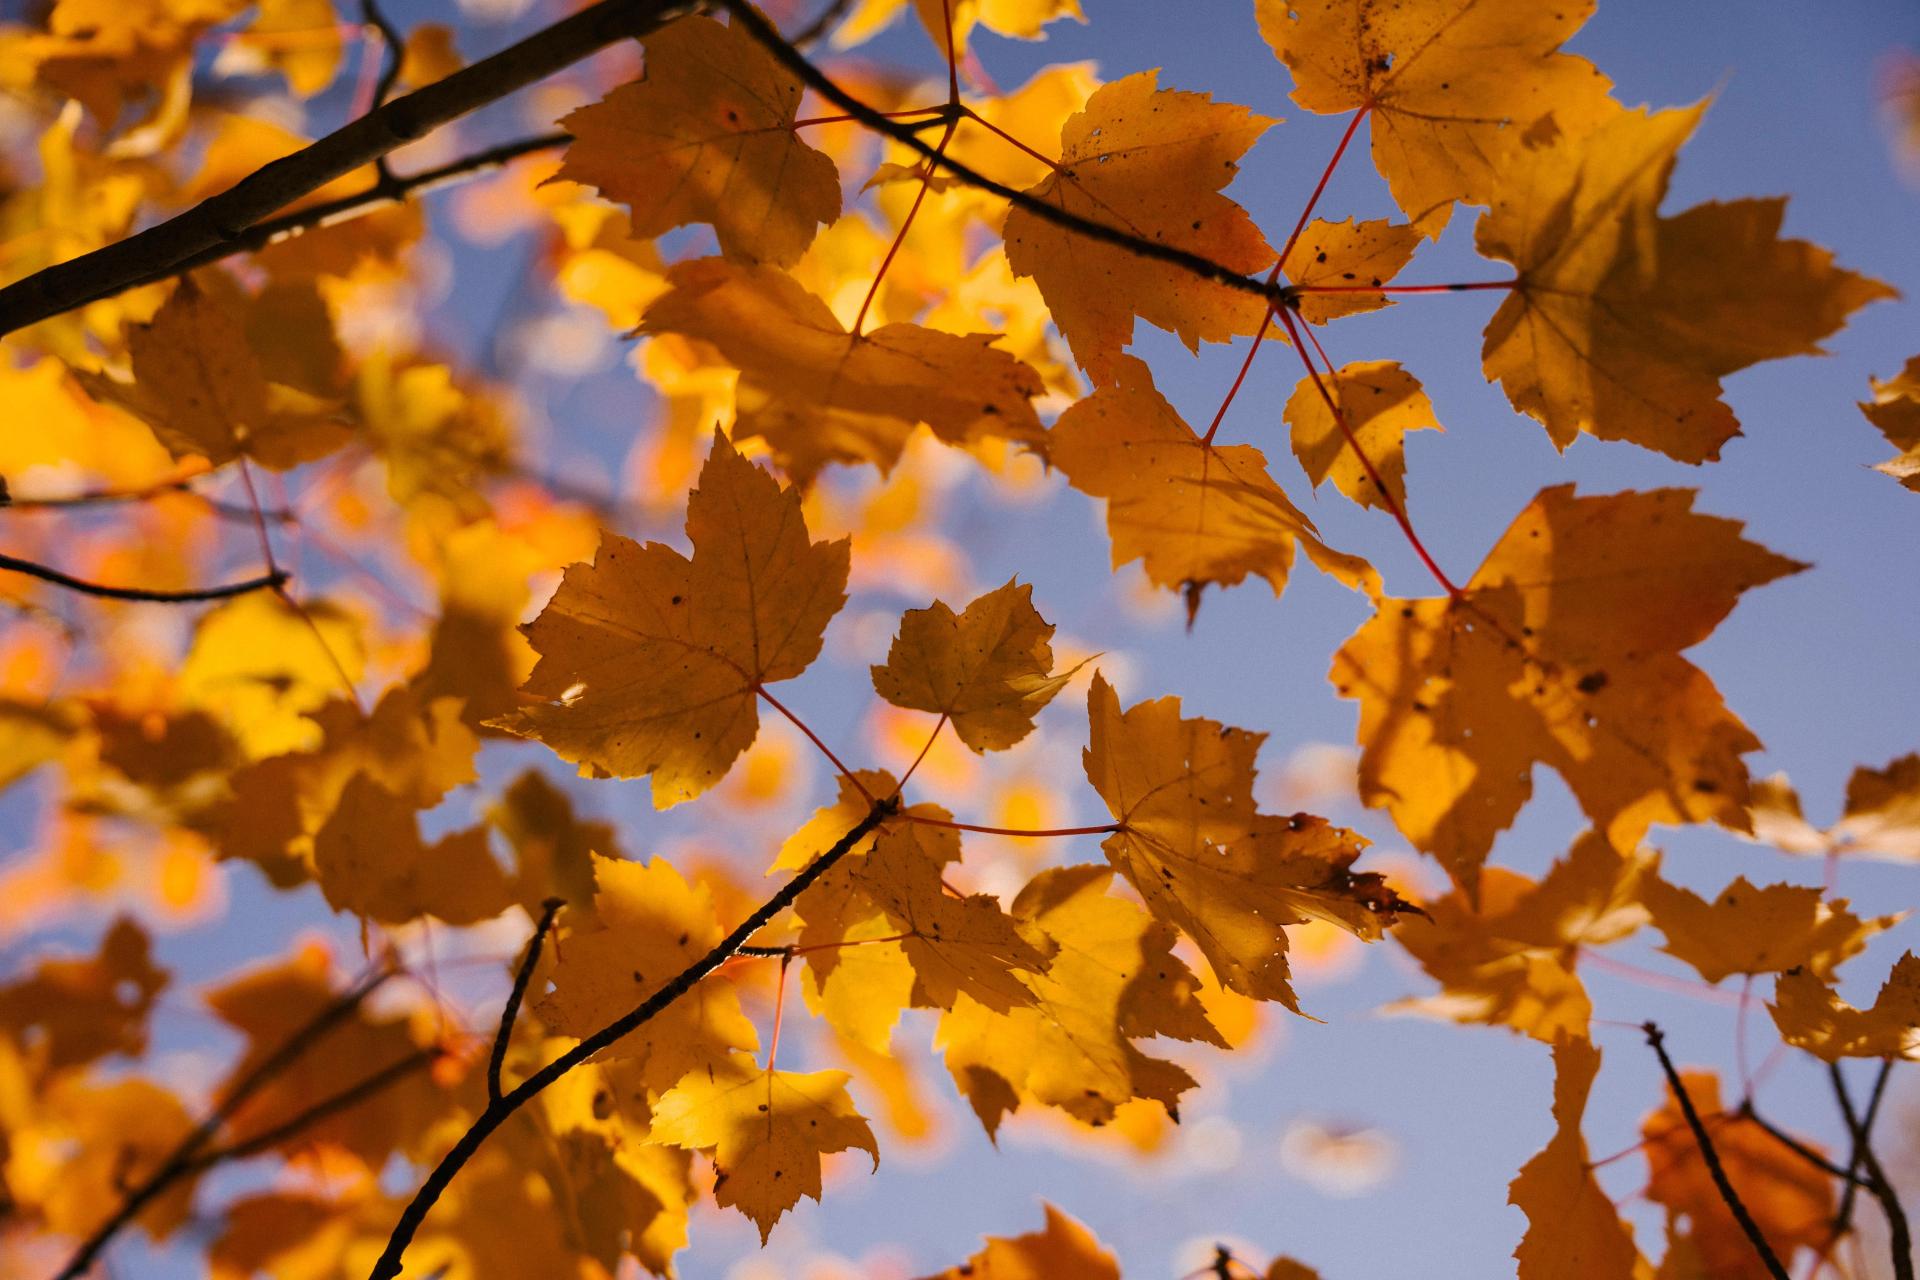 Golden Maple Leaves Against the Blue Sky